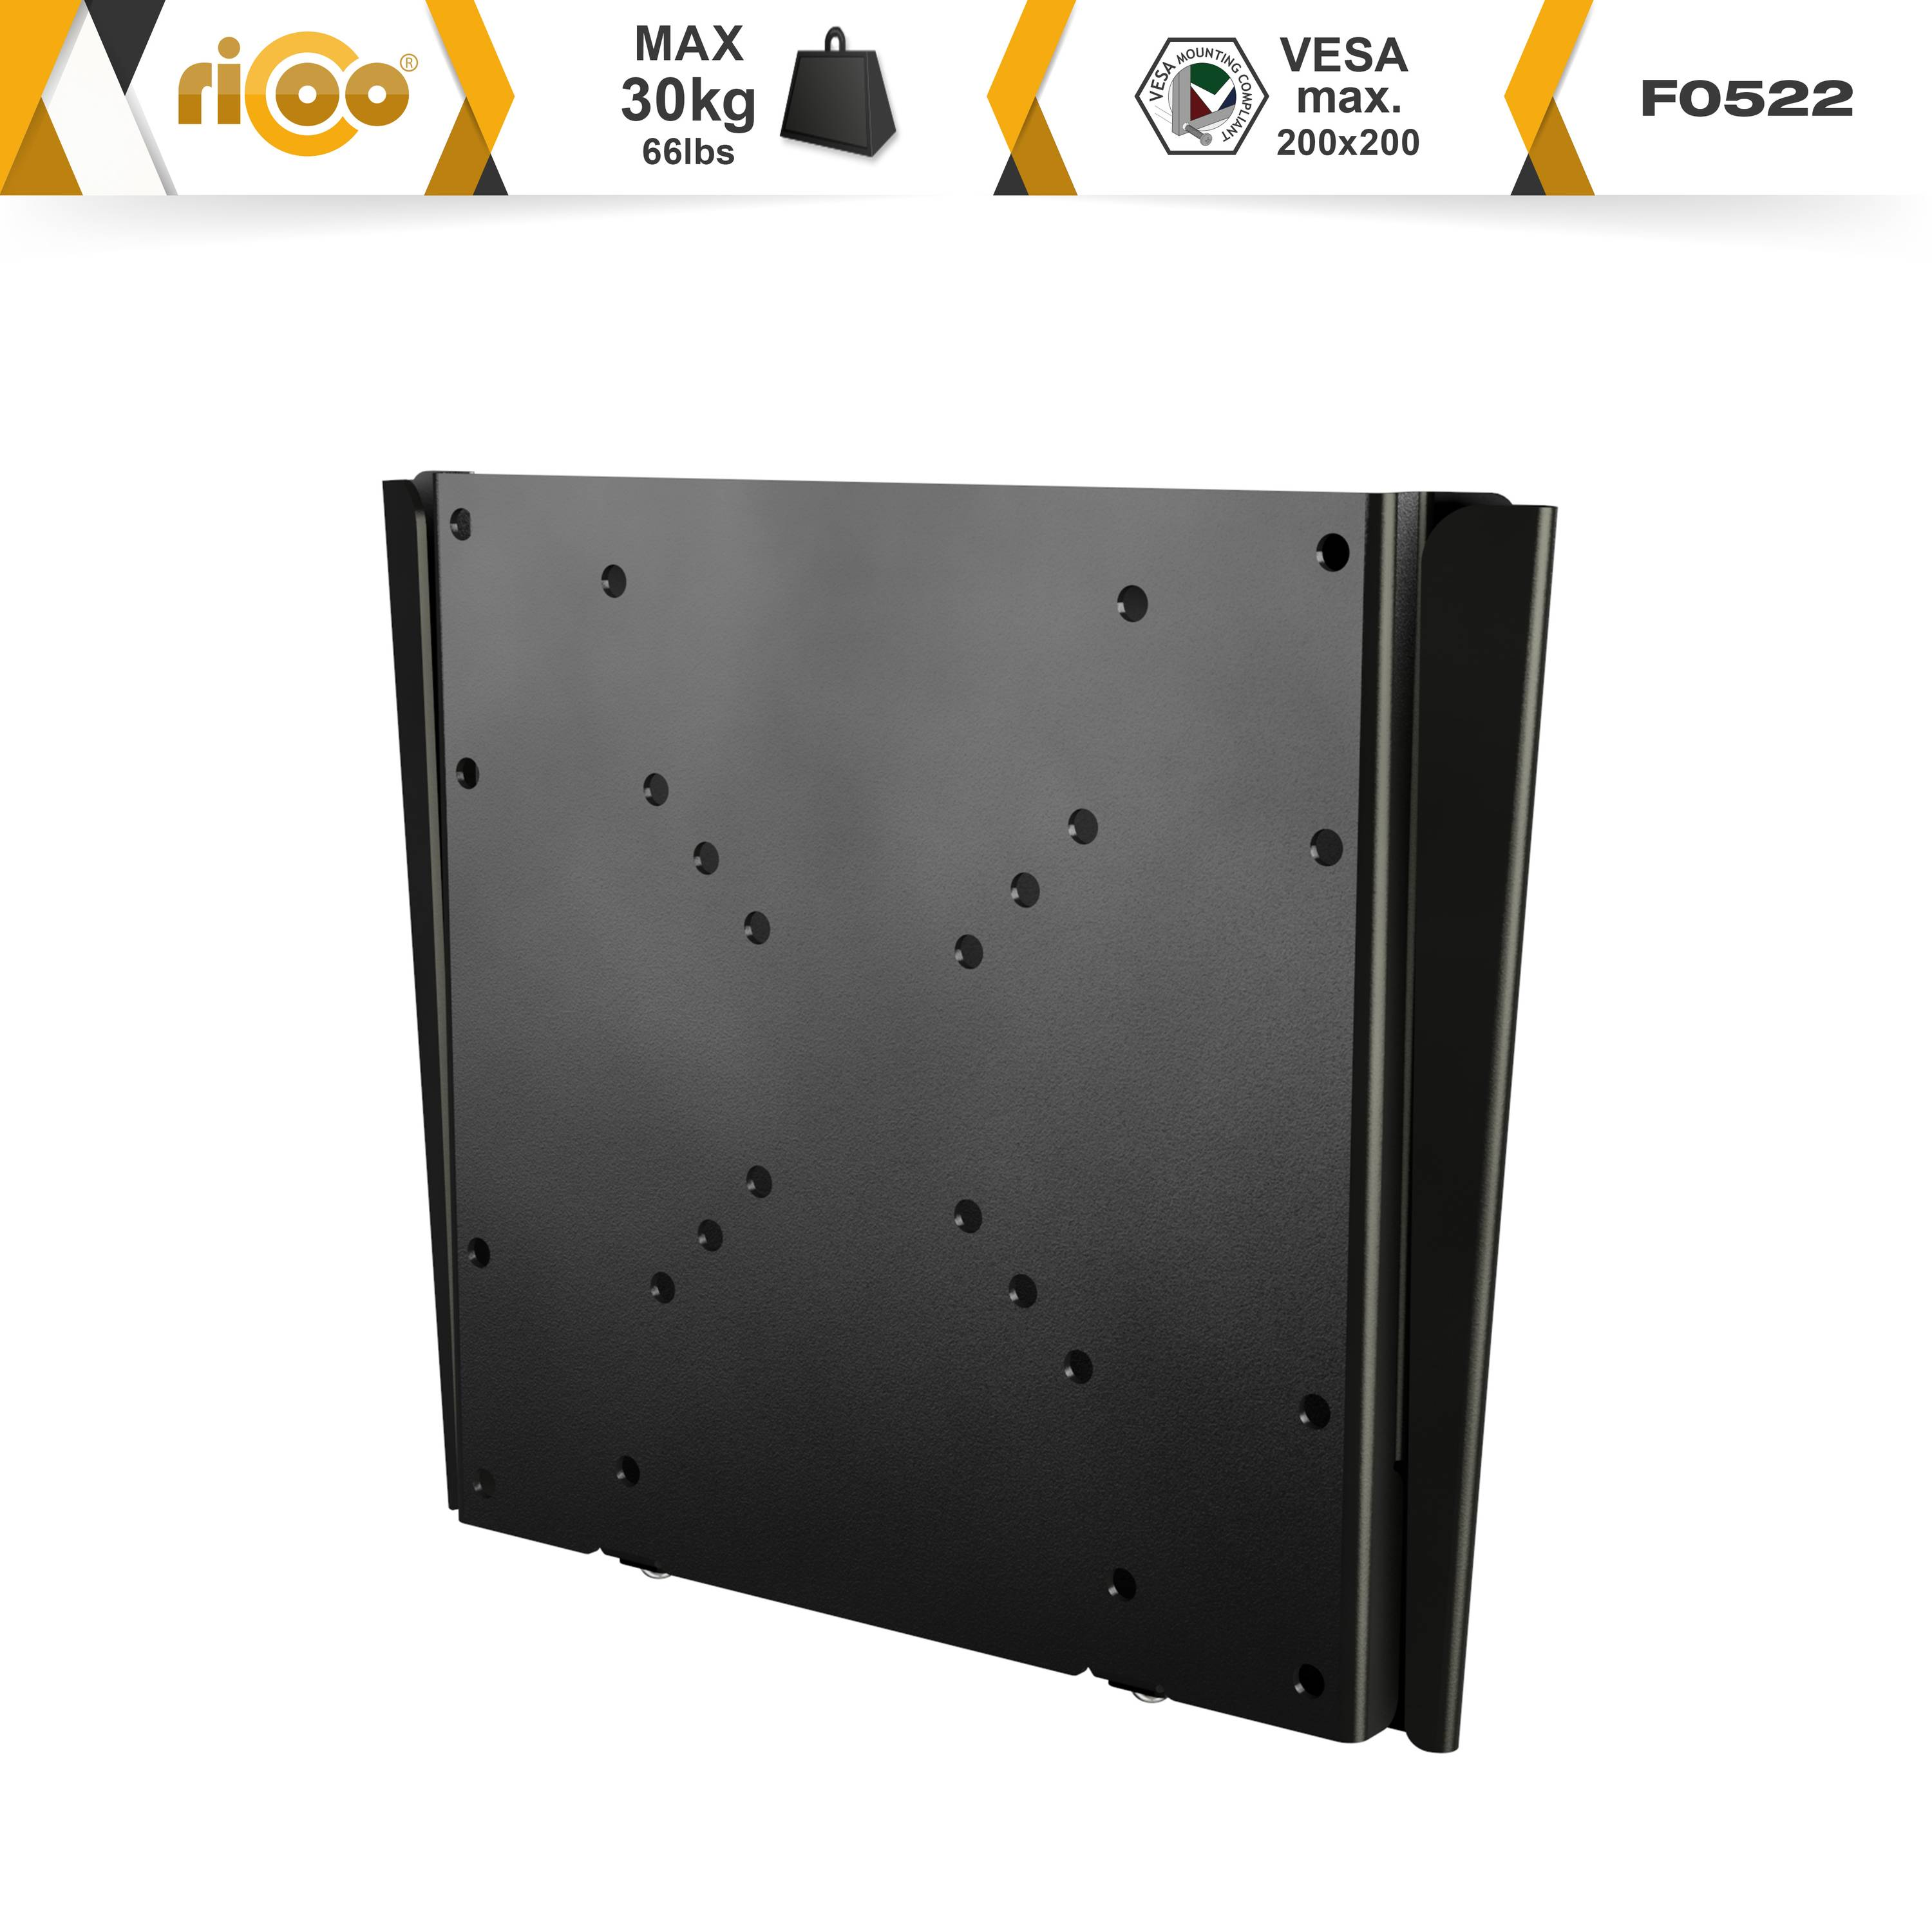 RICOO F0522 für auch Wand universal 200 200 TV Halterung VESA Bildschirm bis curved Wandhalterung, flach Schwarz Fernseher x